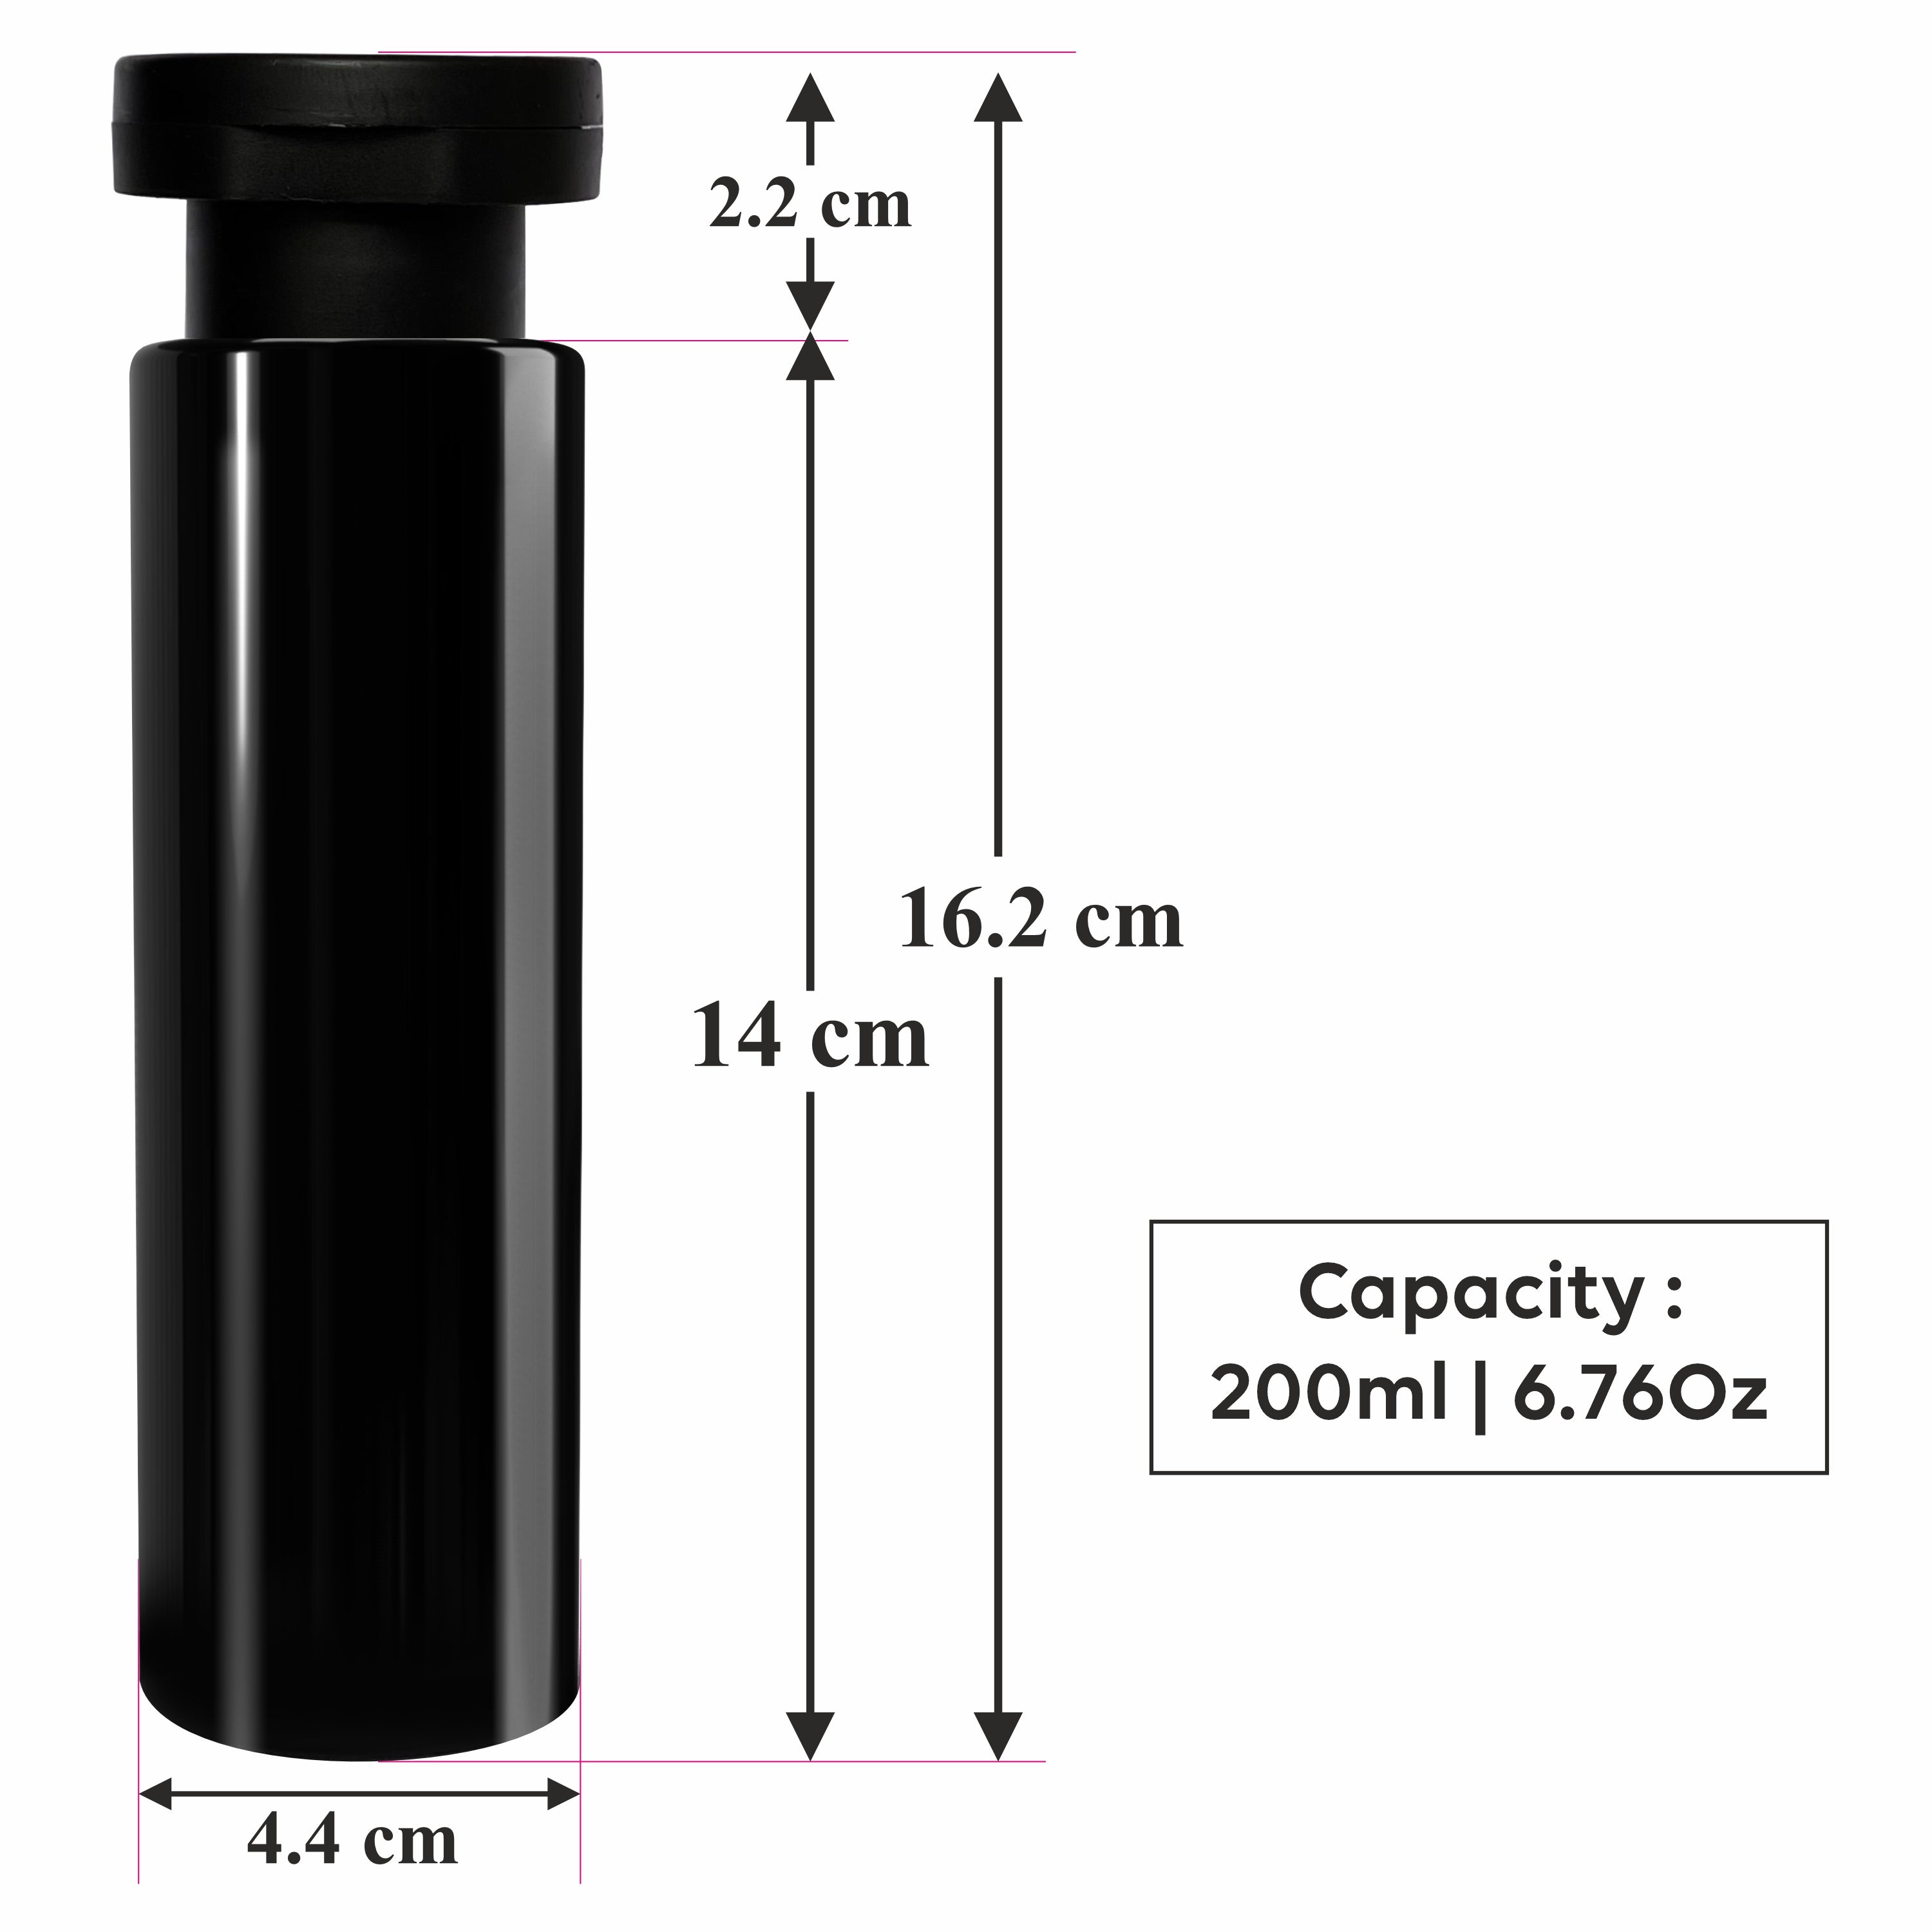 |ZMK45| BLACK COLOR BOTTLE WITH BLACK ELITE FLIPTOP CAP Available Size: 100mL & 200ml